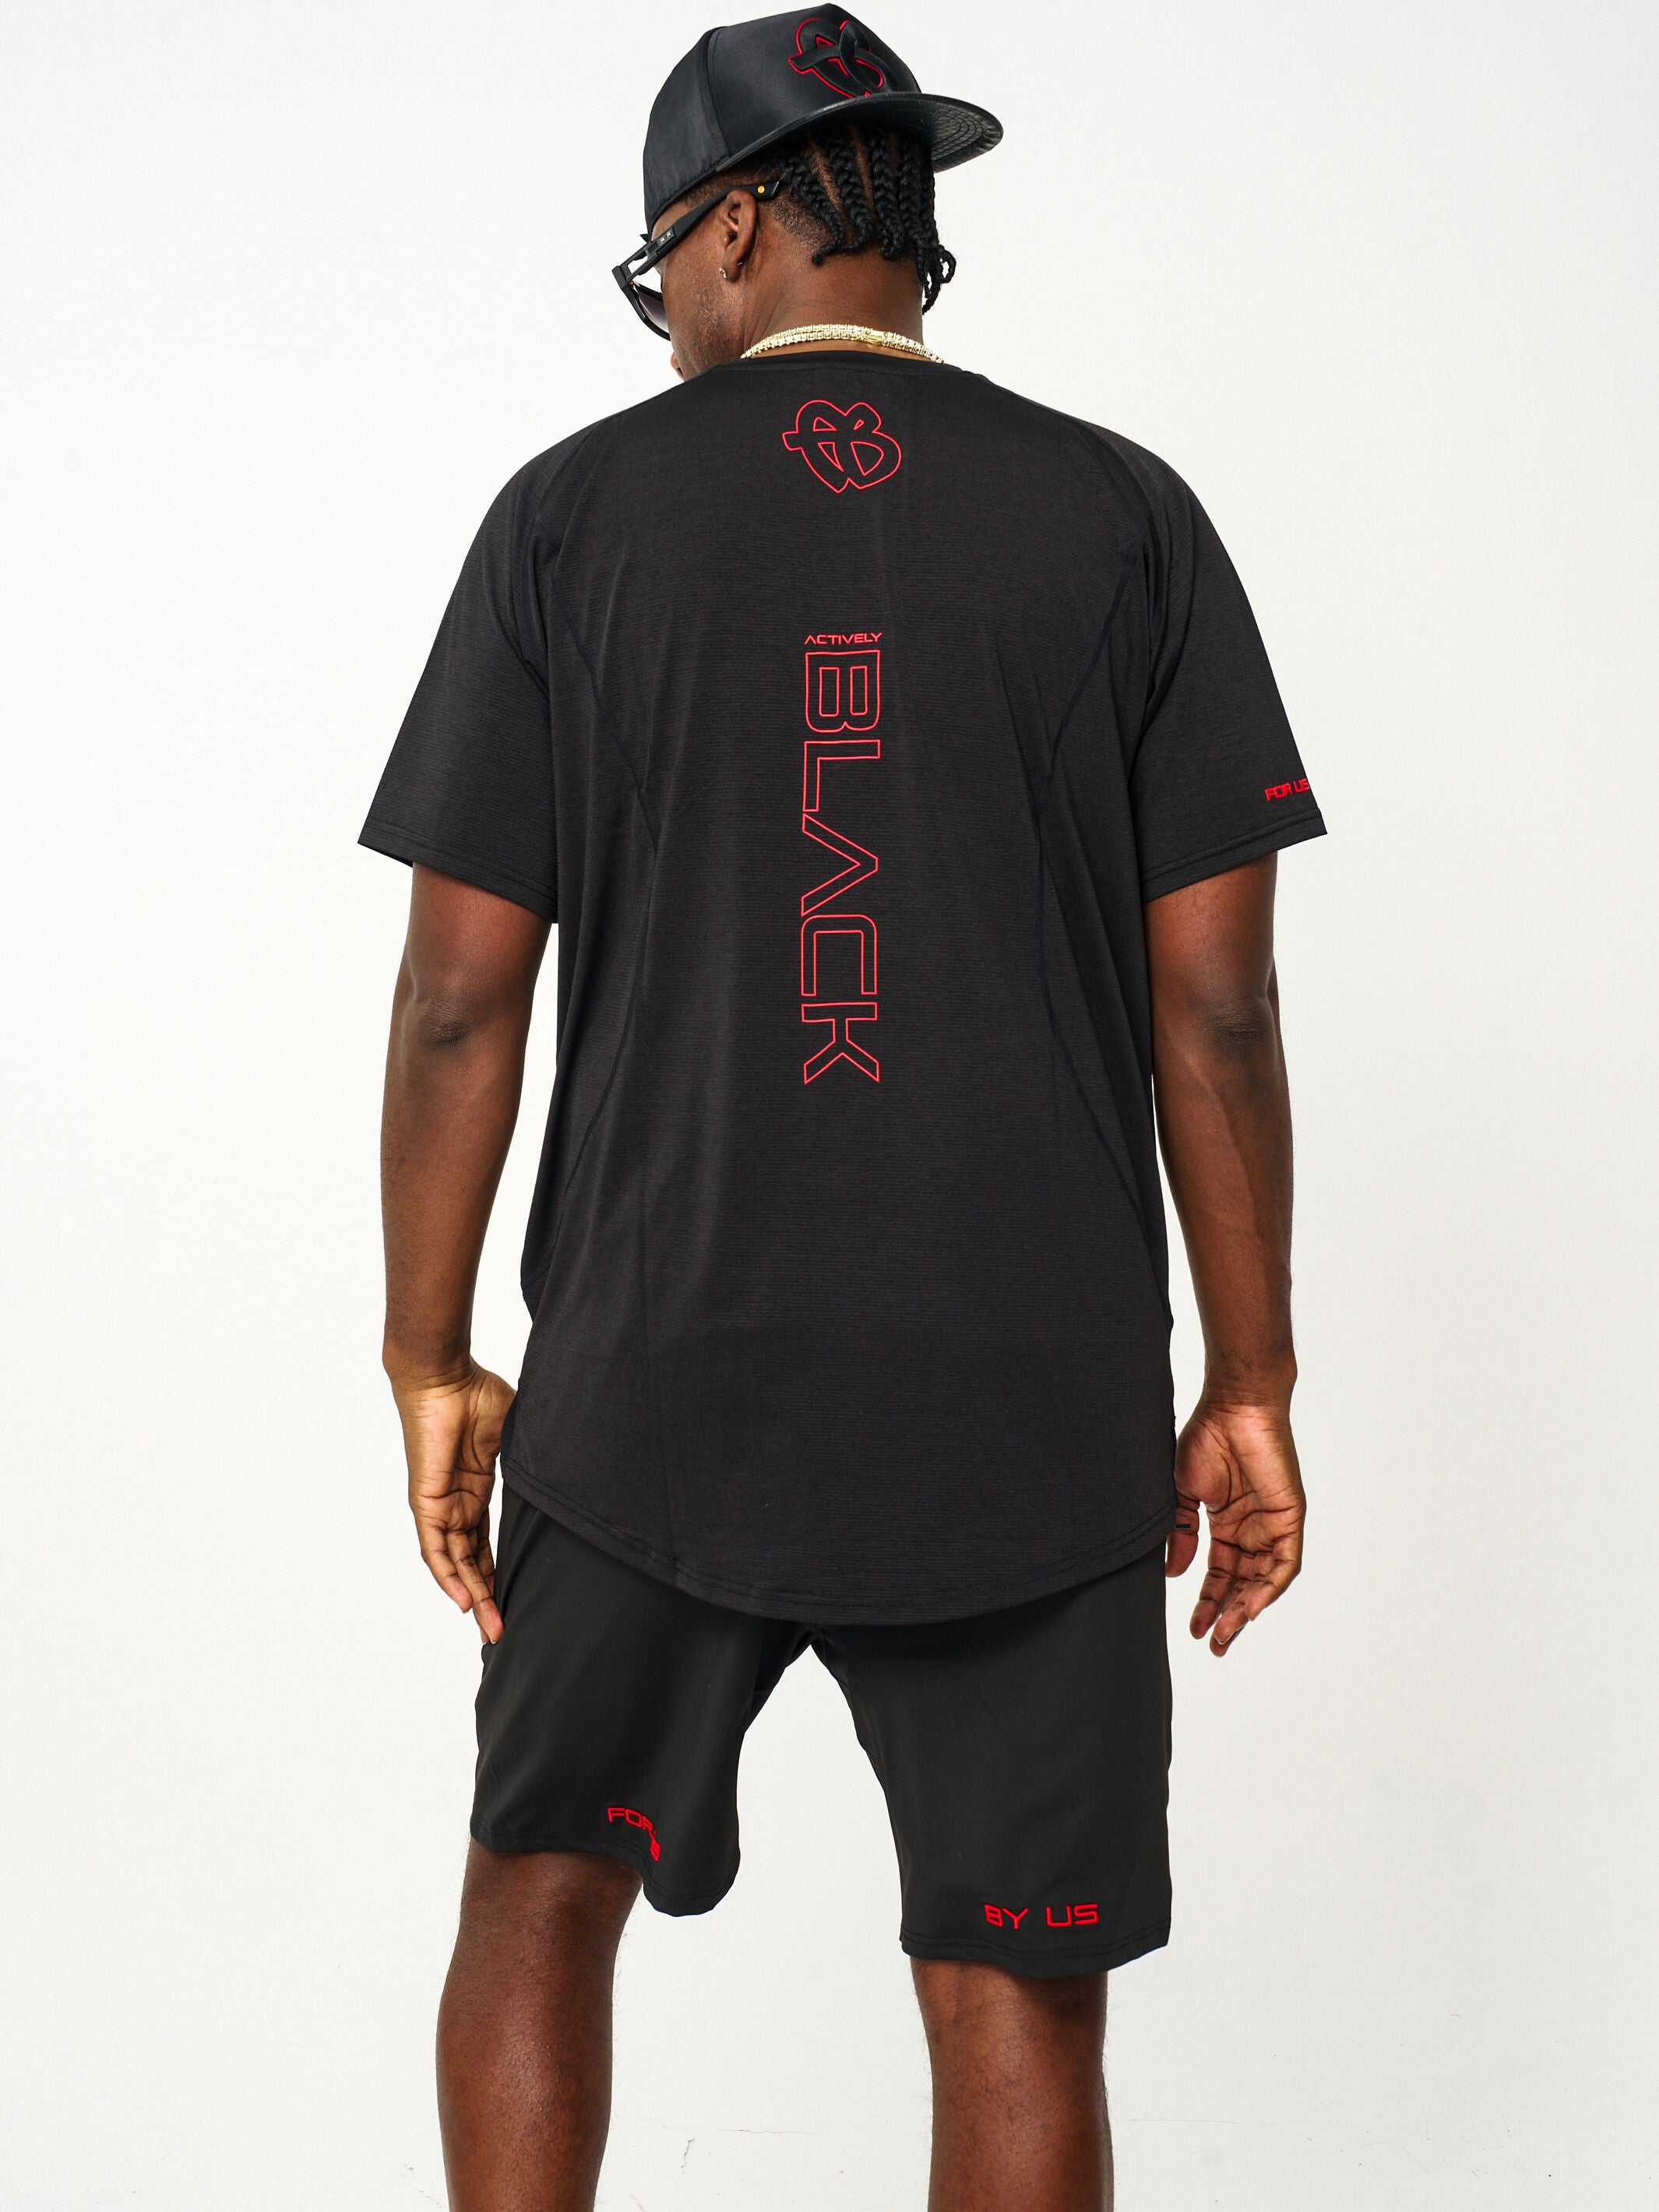 Unisex FUBU x Actively Black Performance Shirt